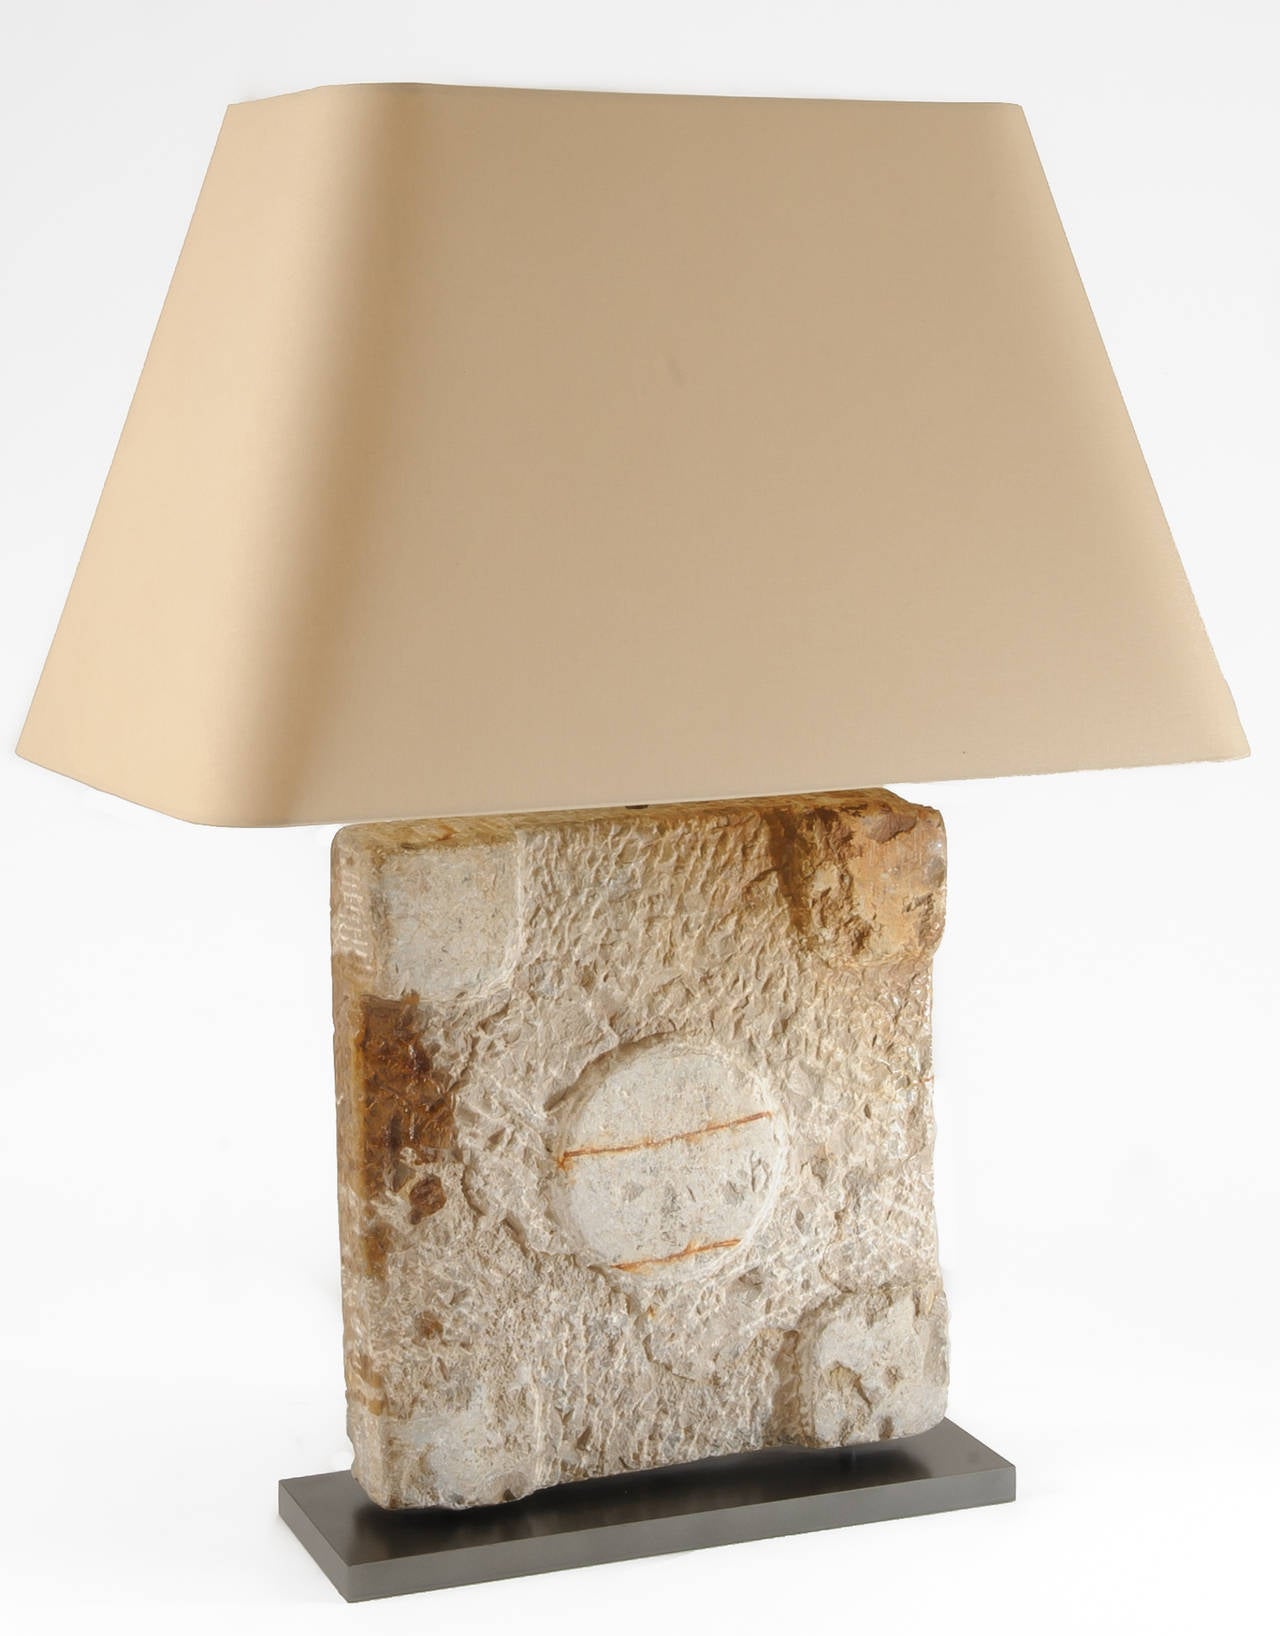 Architektonisches Element: Ein Steinsockel für eine römische Säule wird in einen Lampensockel integriert und auf eine Metallplatte montiert. Die Lampe wurde für den amerikanischen Gebrauch elektrifiziert. Er verfügt über einen Hoch- und Tiefschalter